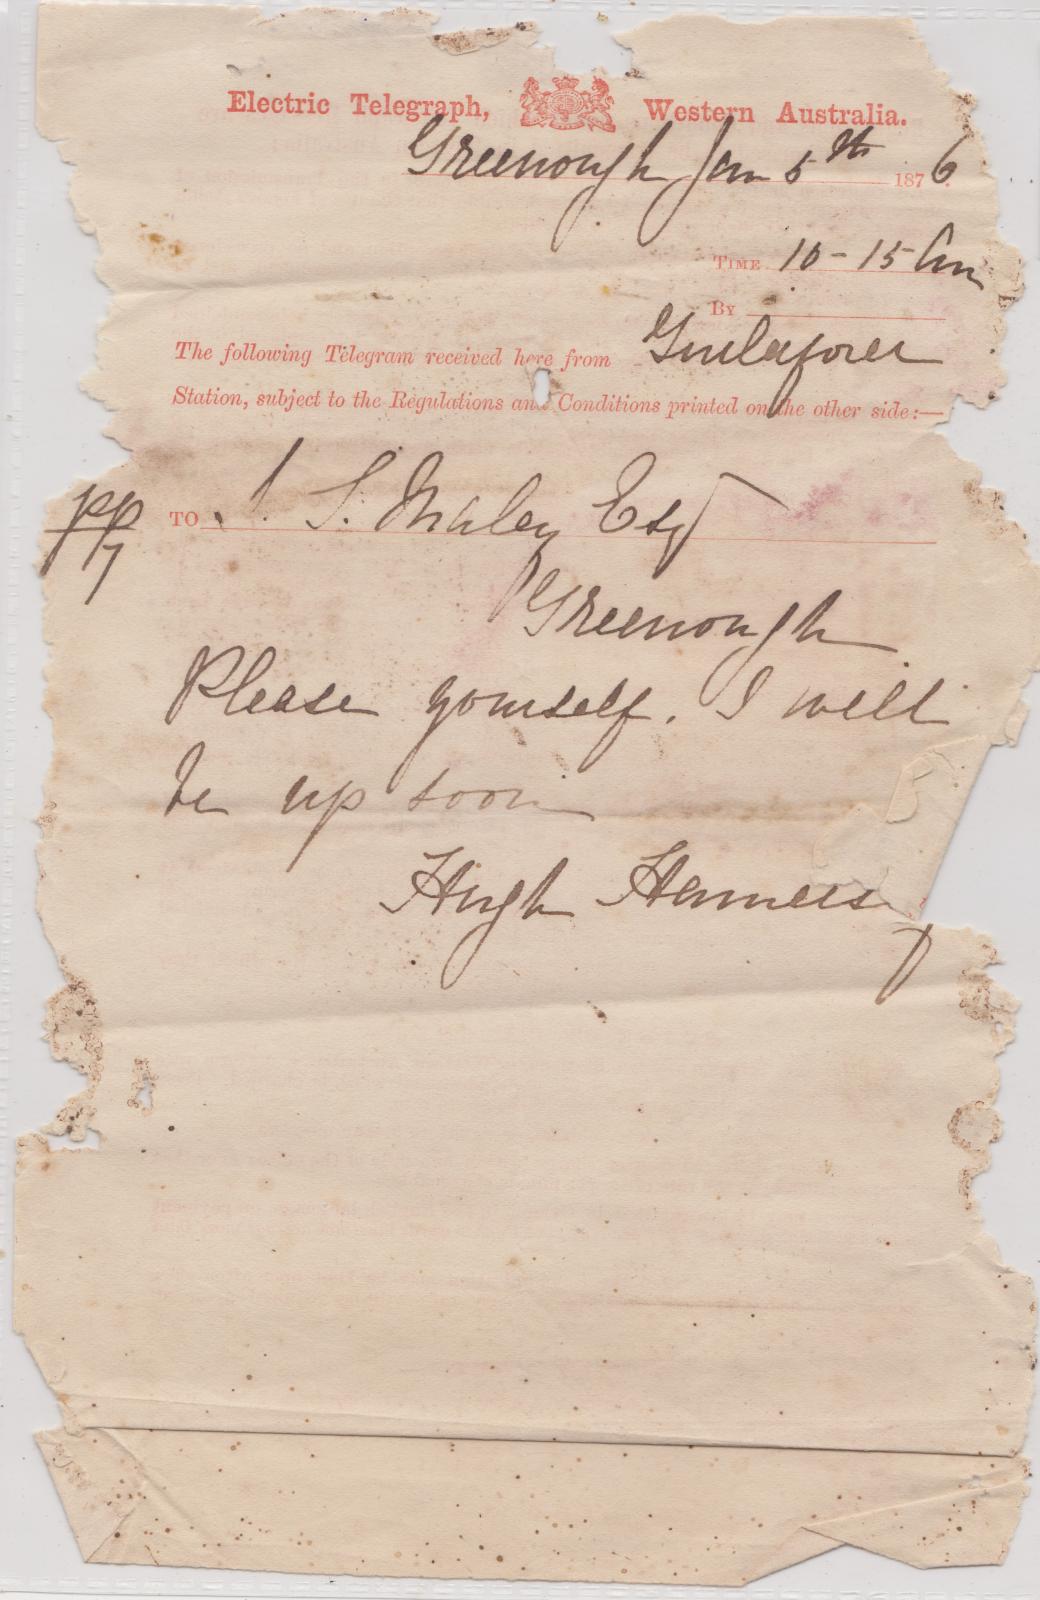 Telegram from Hugh Hamersley to John Maley